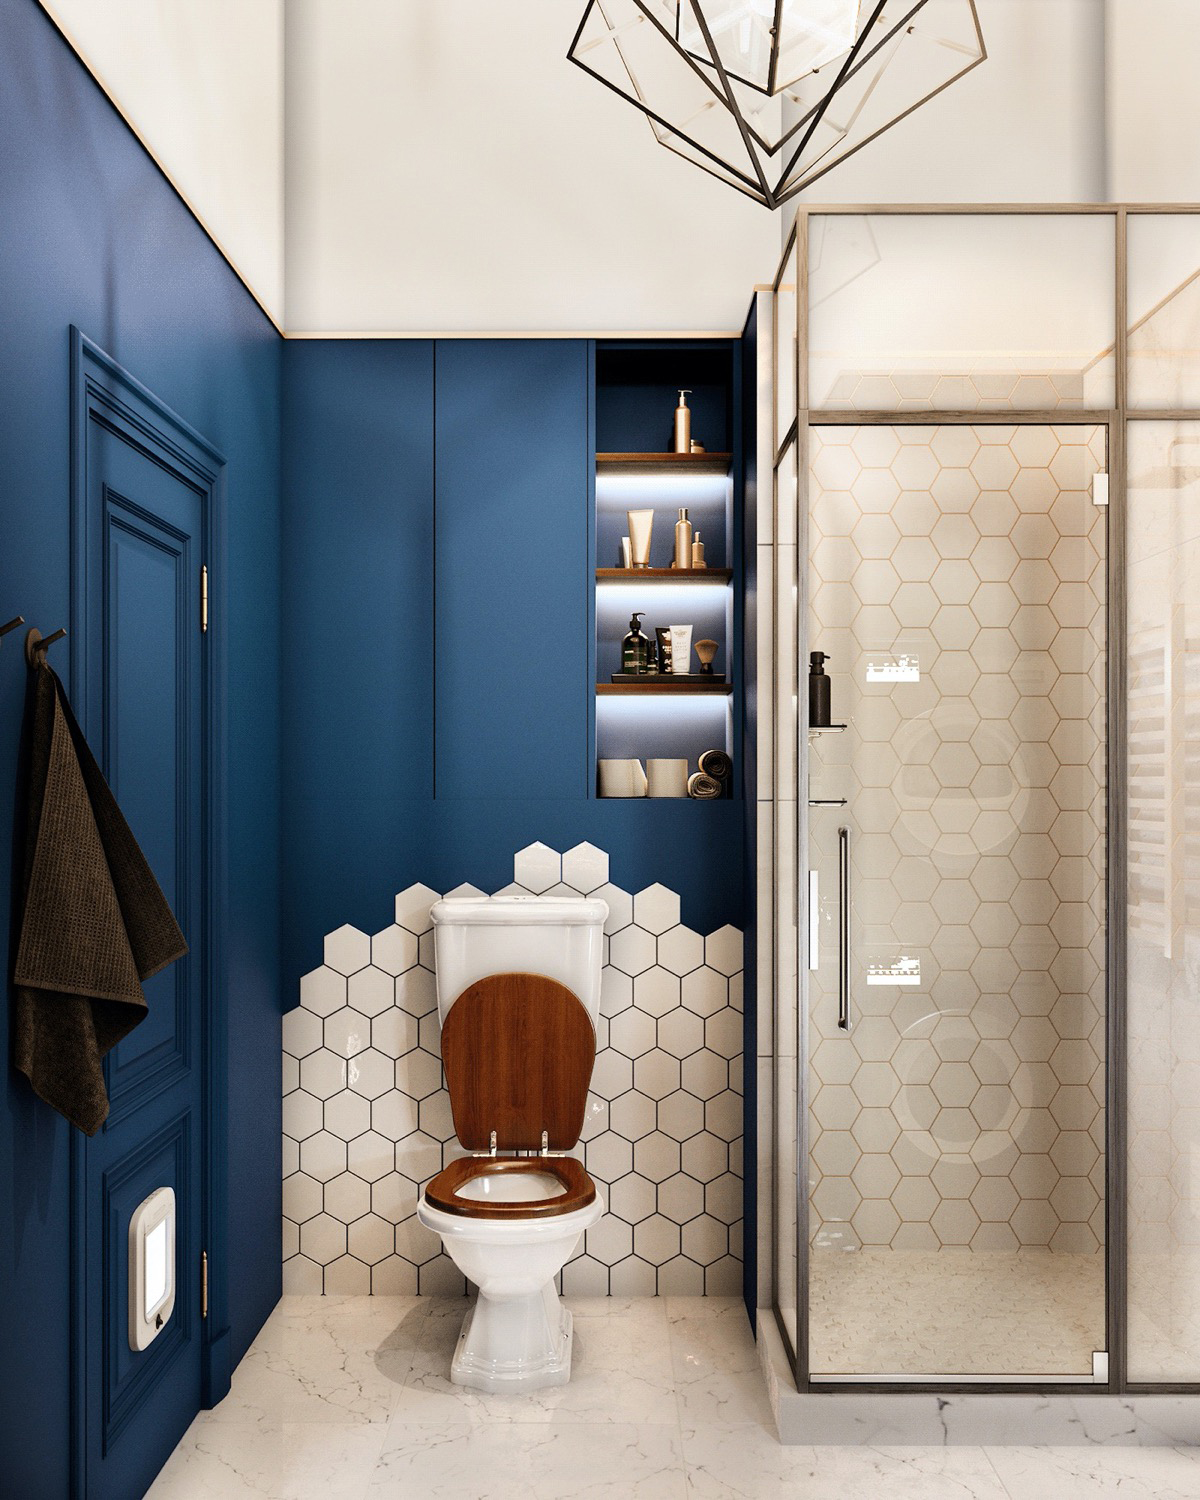 Khu vực toilet thiết kế ấn tượng với sự kết hợp giữa tường sơn xanh coban và một phần ốp gạch tổ ong màu trắng. Loại gạch này cũng được sử dụng cho khu vực buồng tắm đứng cho cái nhìn sang trọng và đẹp mắt.